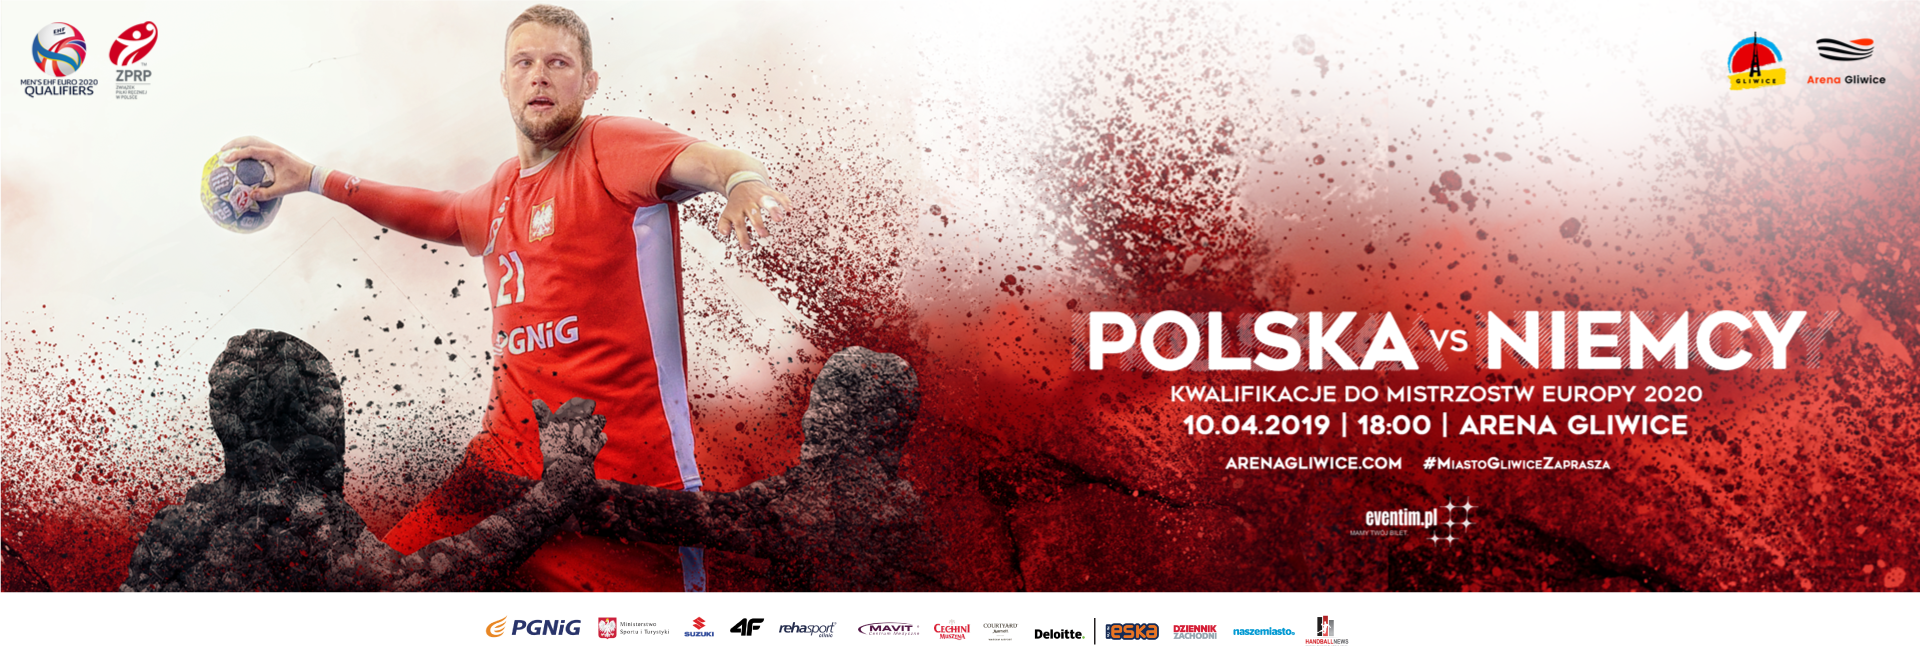 Mecz Polska vs Niemcy. Kwalifikacje do Mistrzostw Europy 2020. Festiwal piłki ręcznej w Gliwicach.